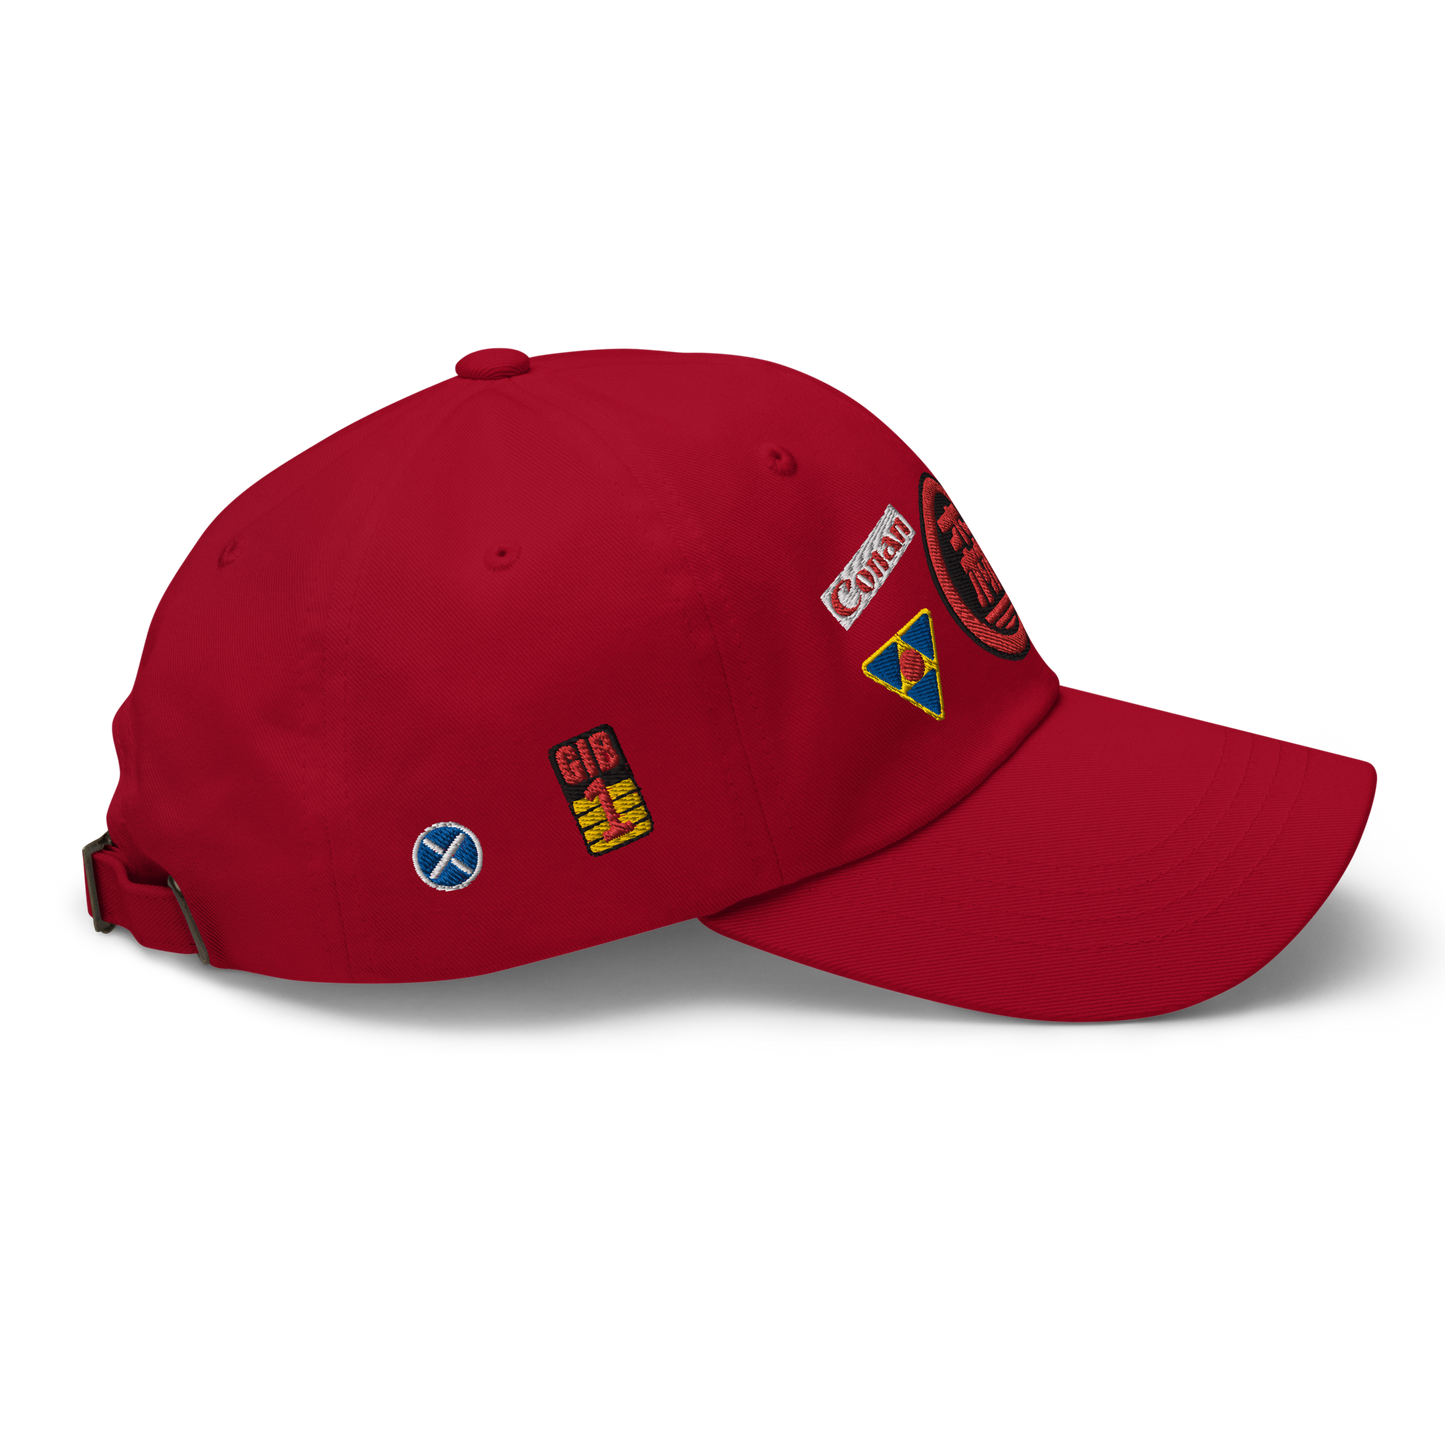 Akira hat